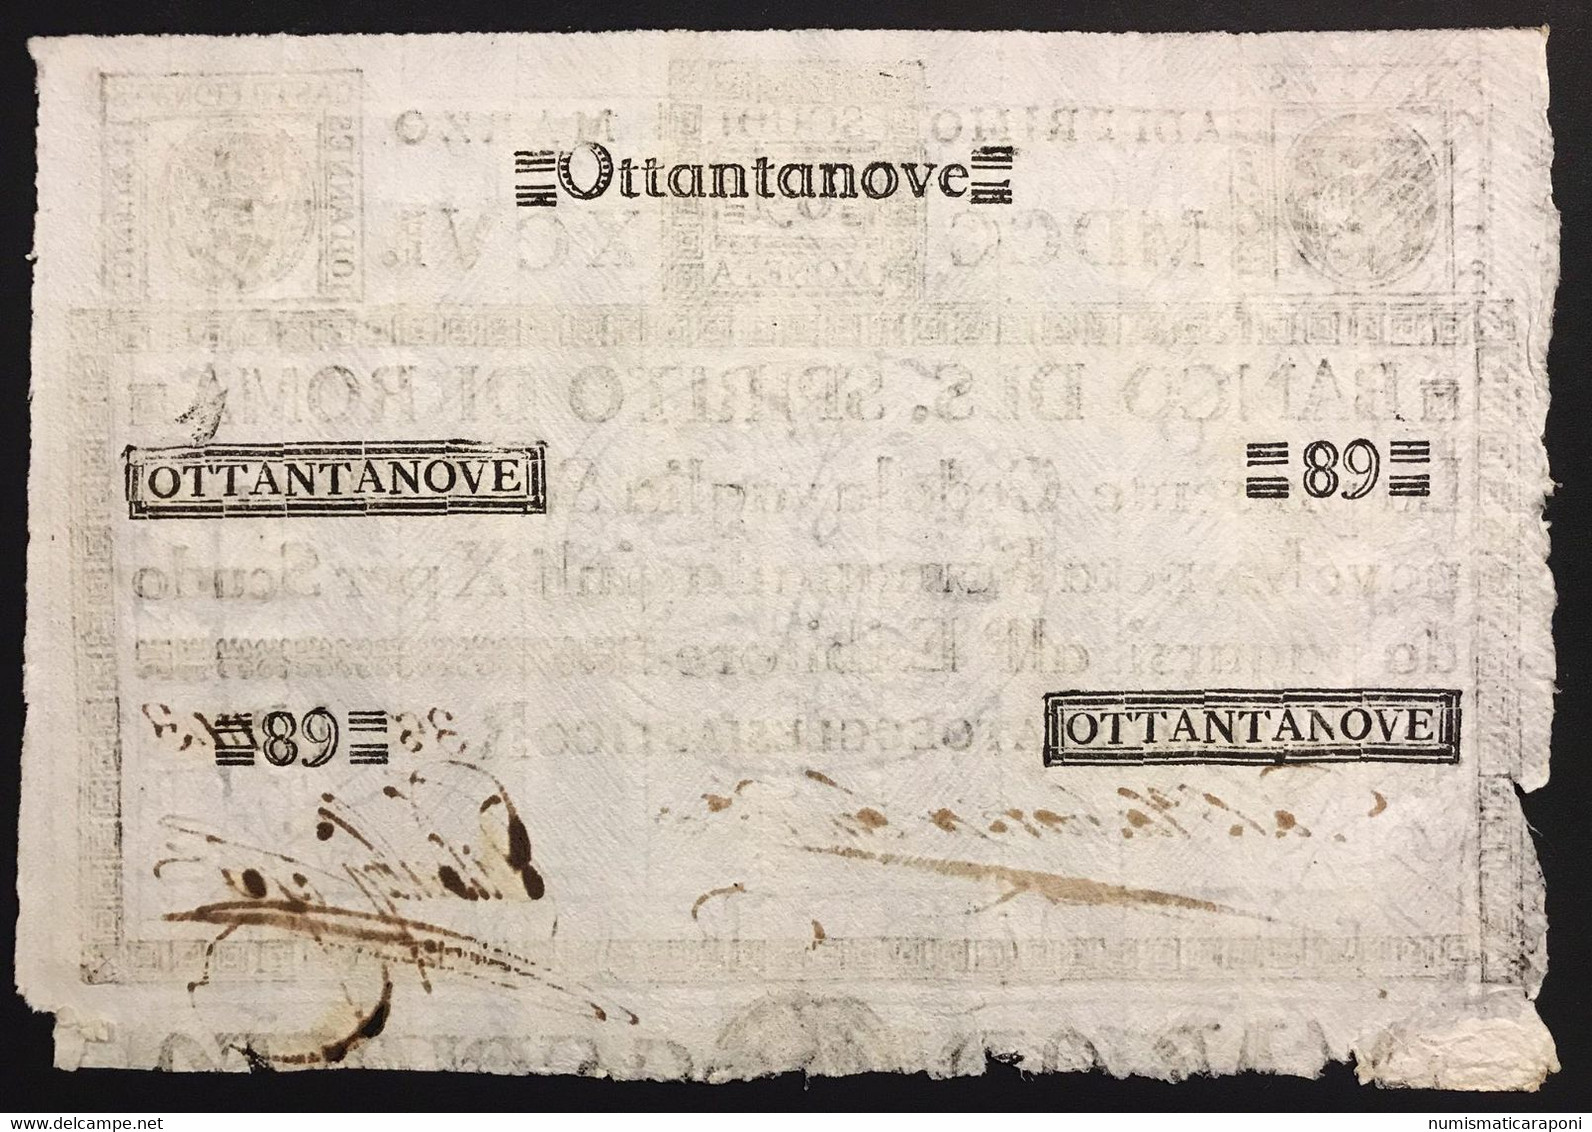 Banco Di Santo Spirito Di Roma 89 Scudi 01 03 1796 Ottimo Esemplare  Spl Lotto.3681 - [ 9] Sammlungen